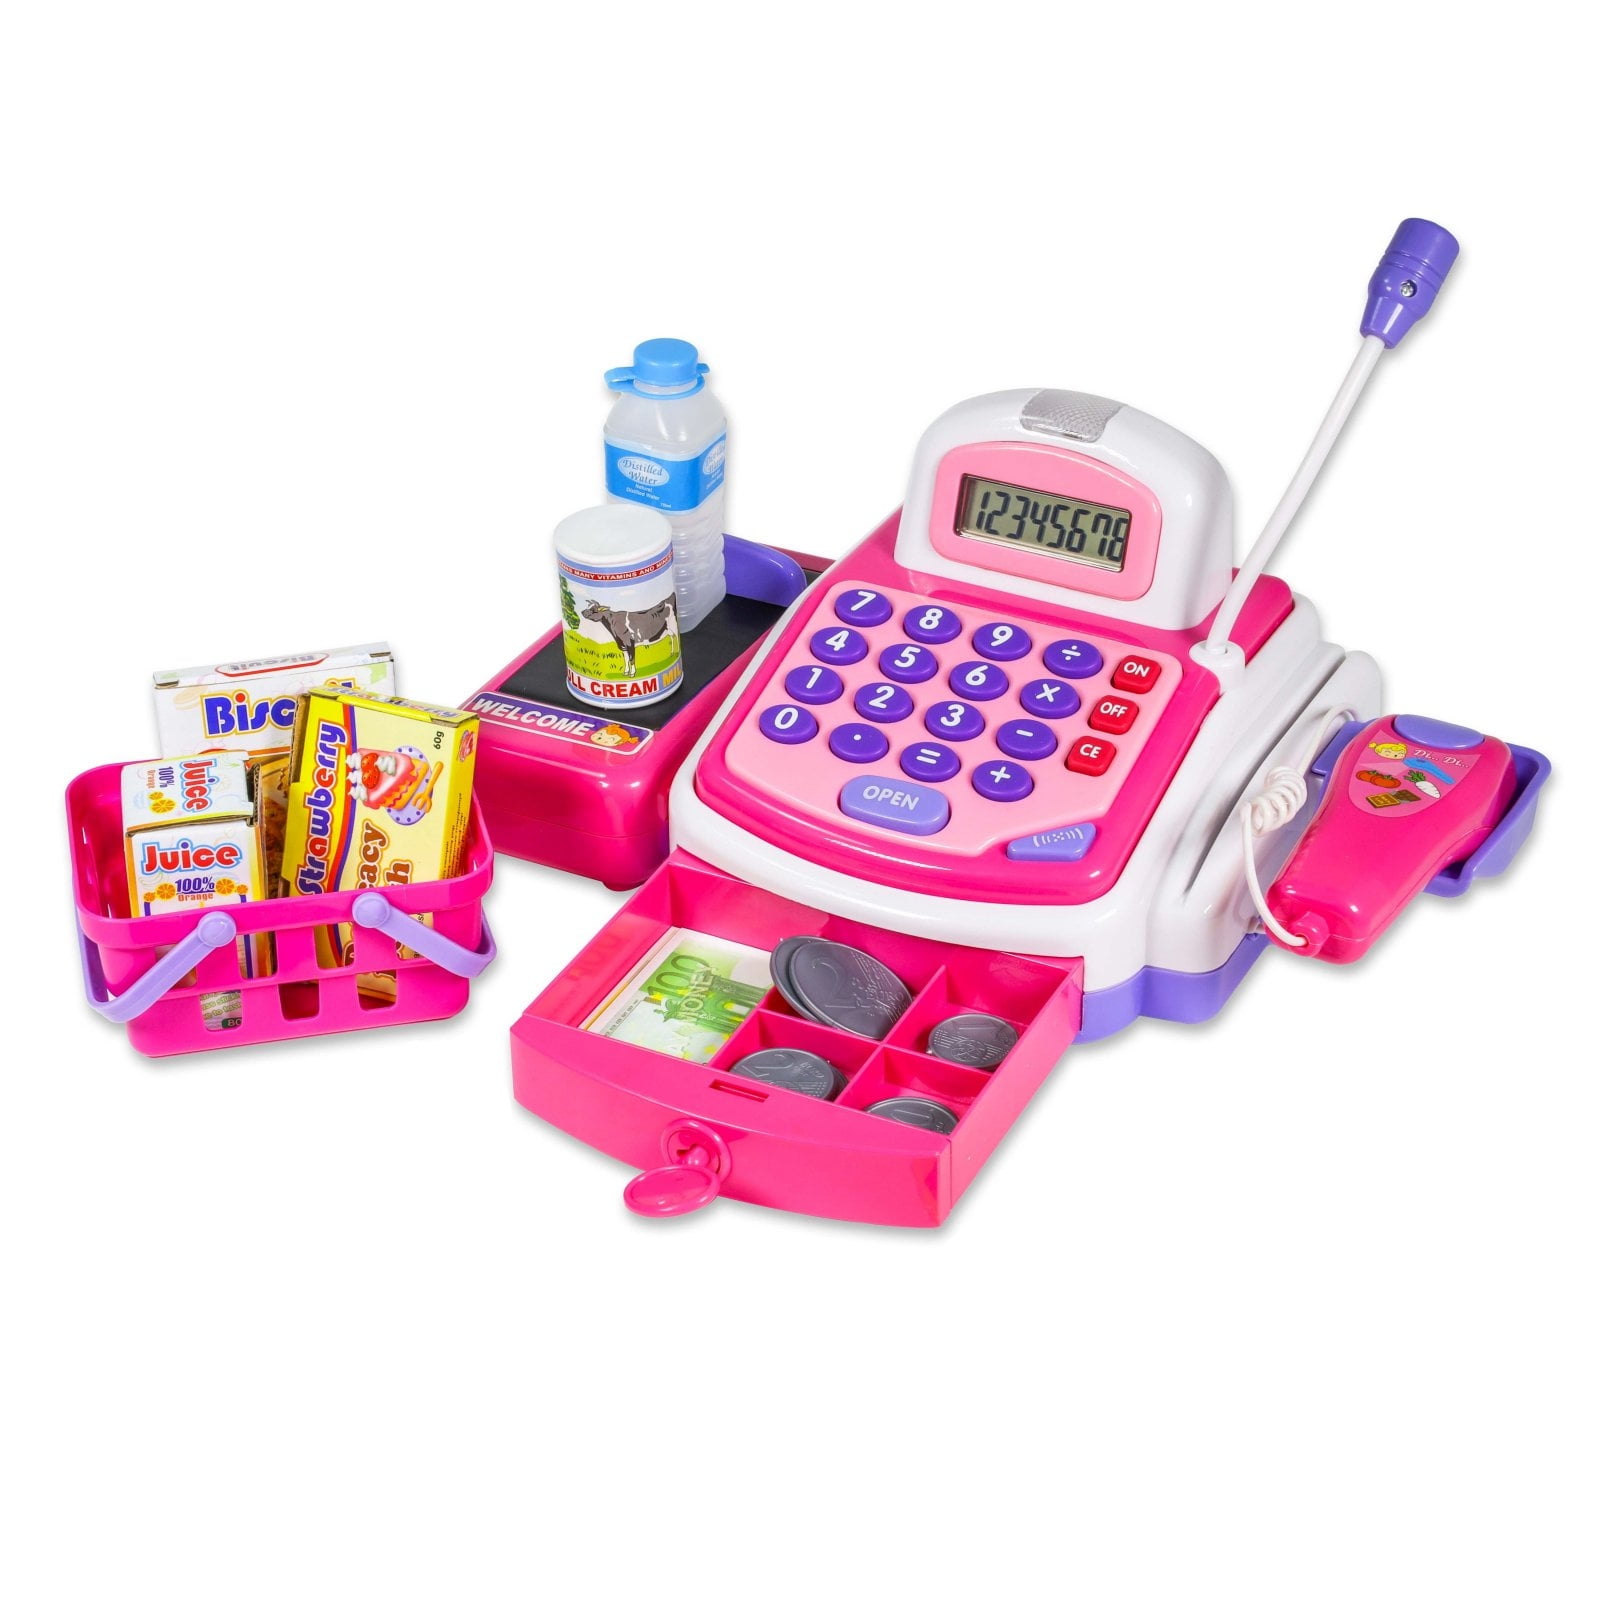 Details about   Supermarket Till Kids Cash Register Toy Gift Set Child Girl Shop Role Play Pink 